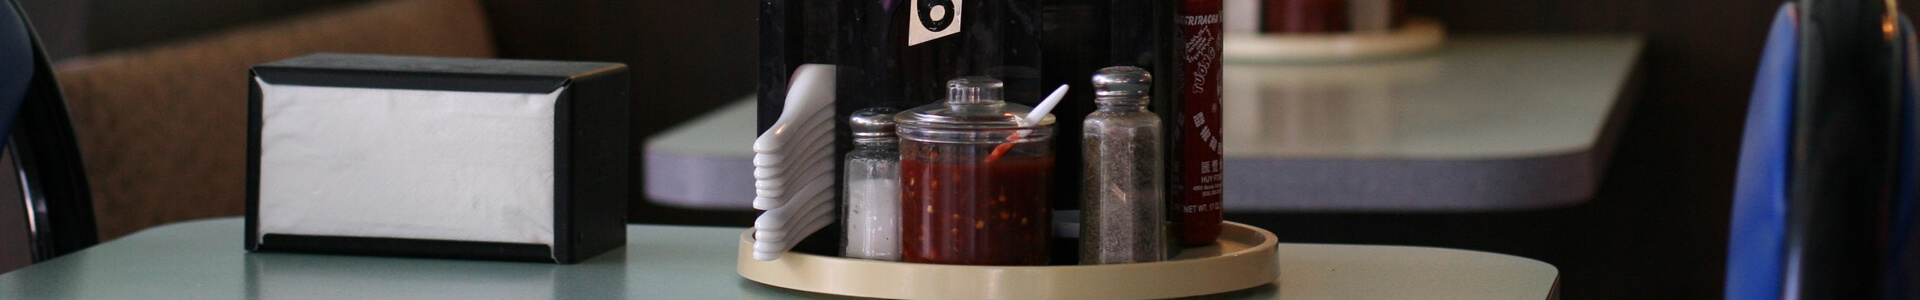 Gewürze und Servietten in Haltern stehen auf einem Restaurant-Tisch.